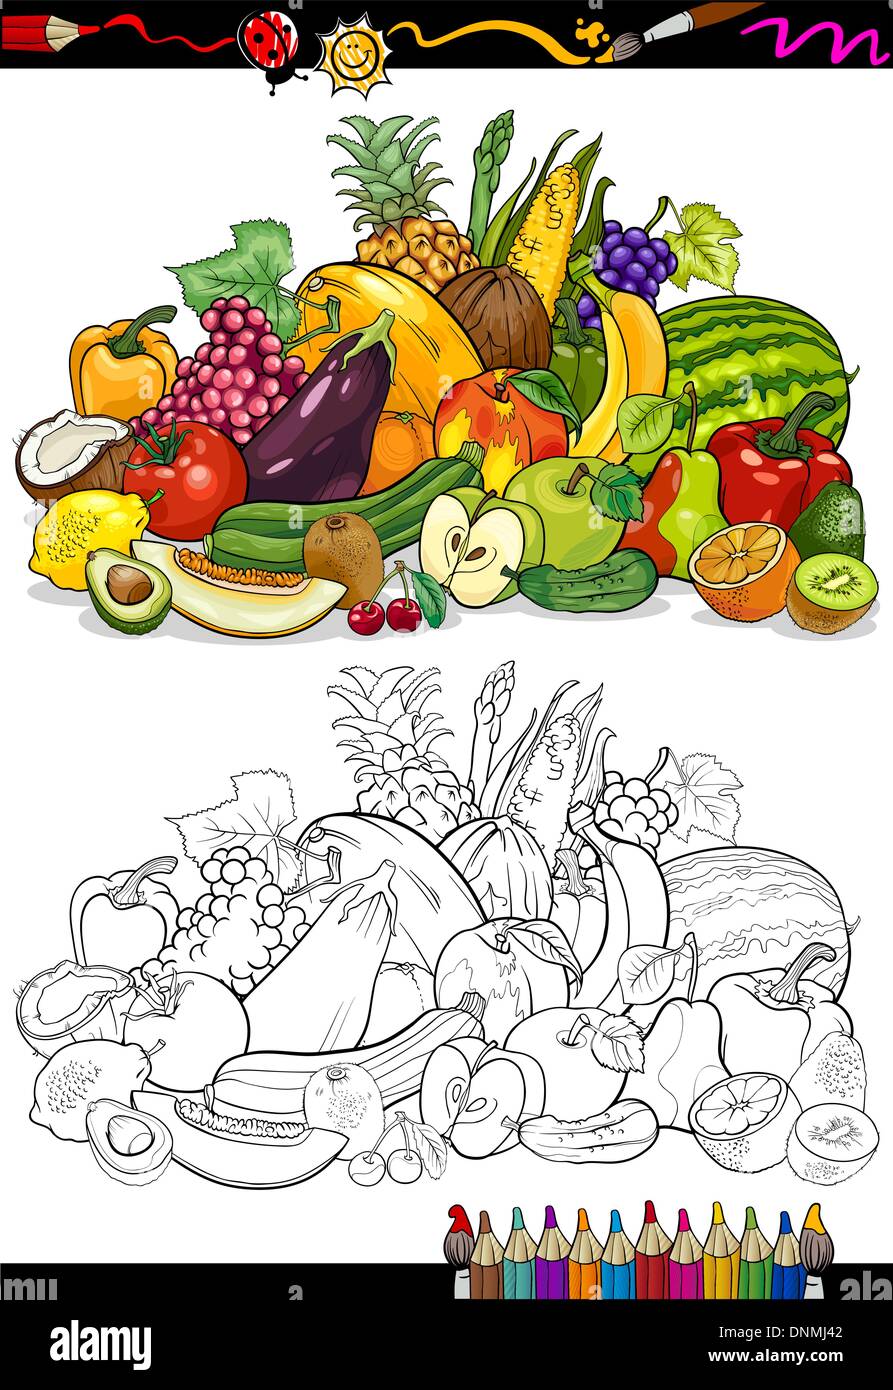 Färbung, Buch oder Seite Cartoon Illustration von Obst und Gemüse essen Großkonzern für Kindererziehung Stock Vektor